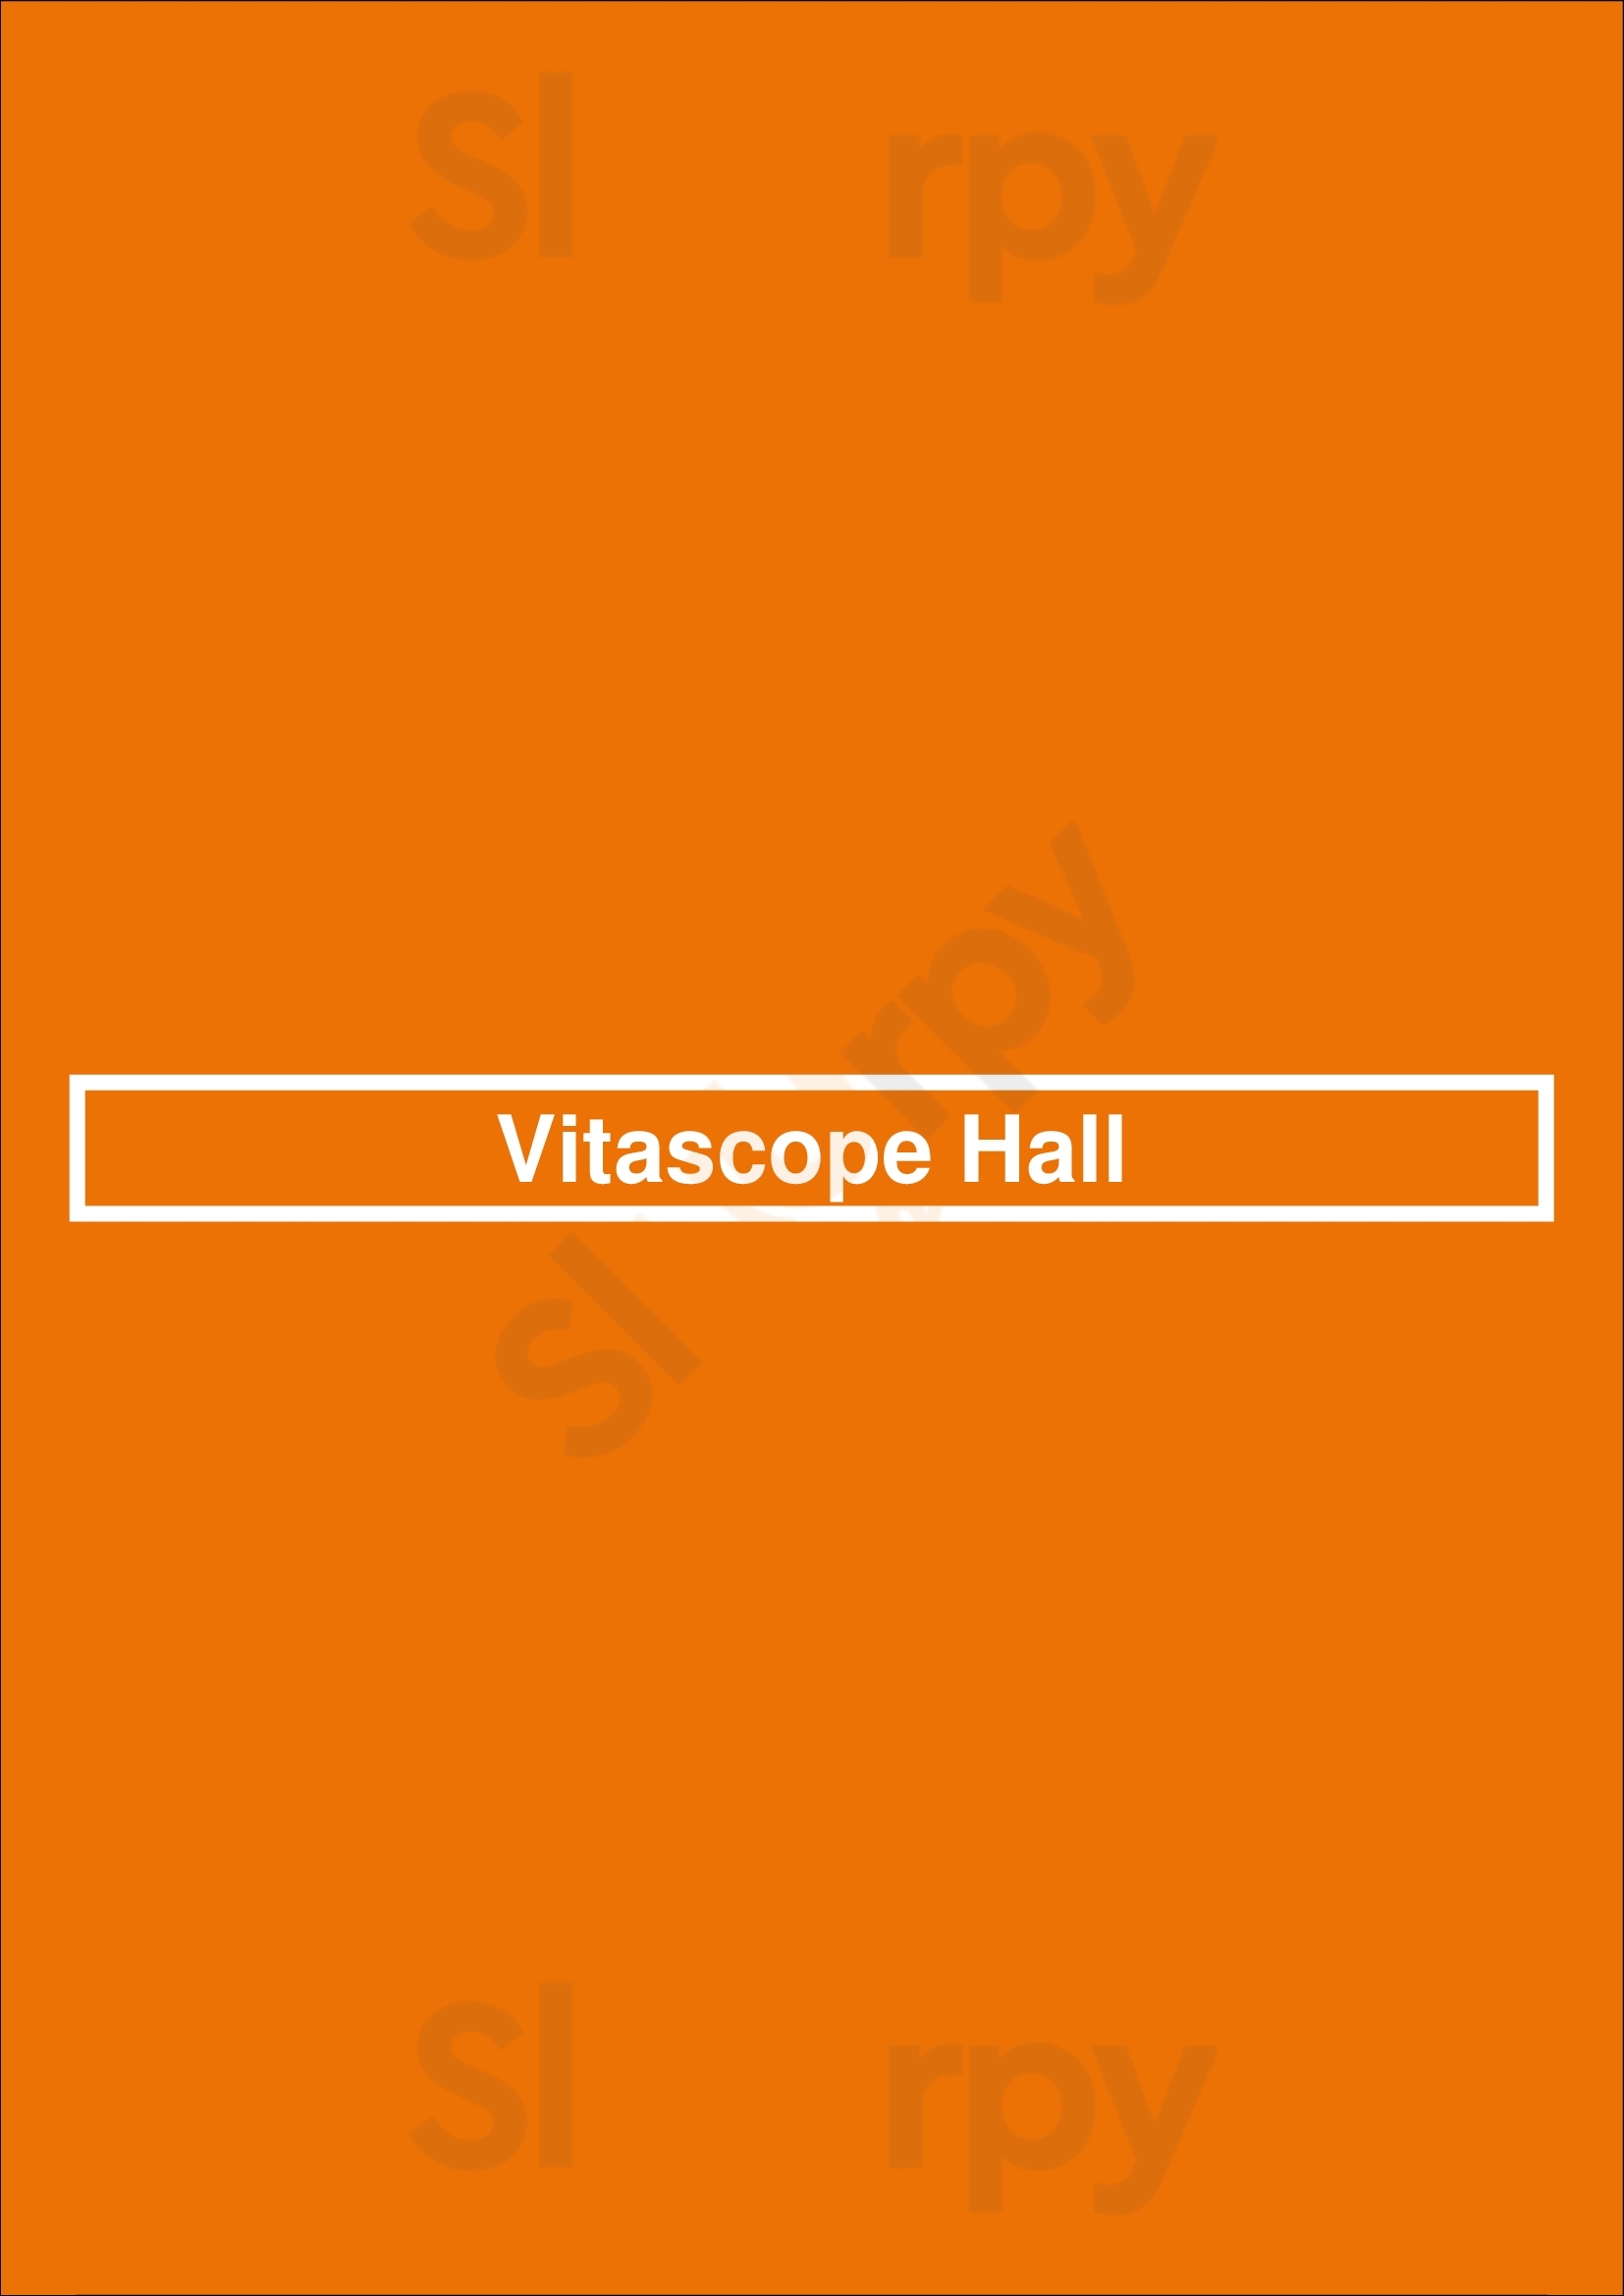 Vitascope Hall New Orleans Menu - 1